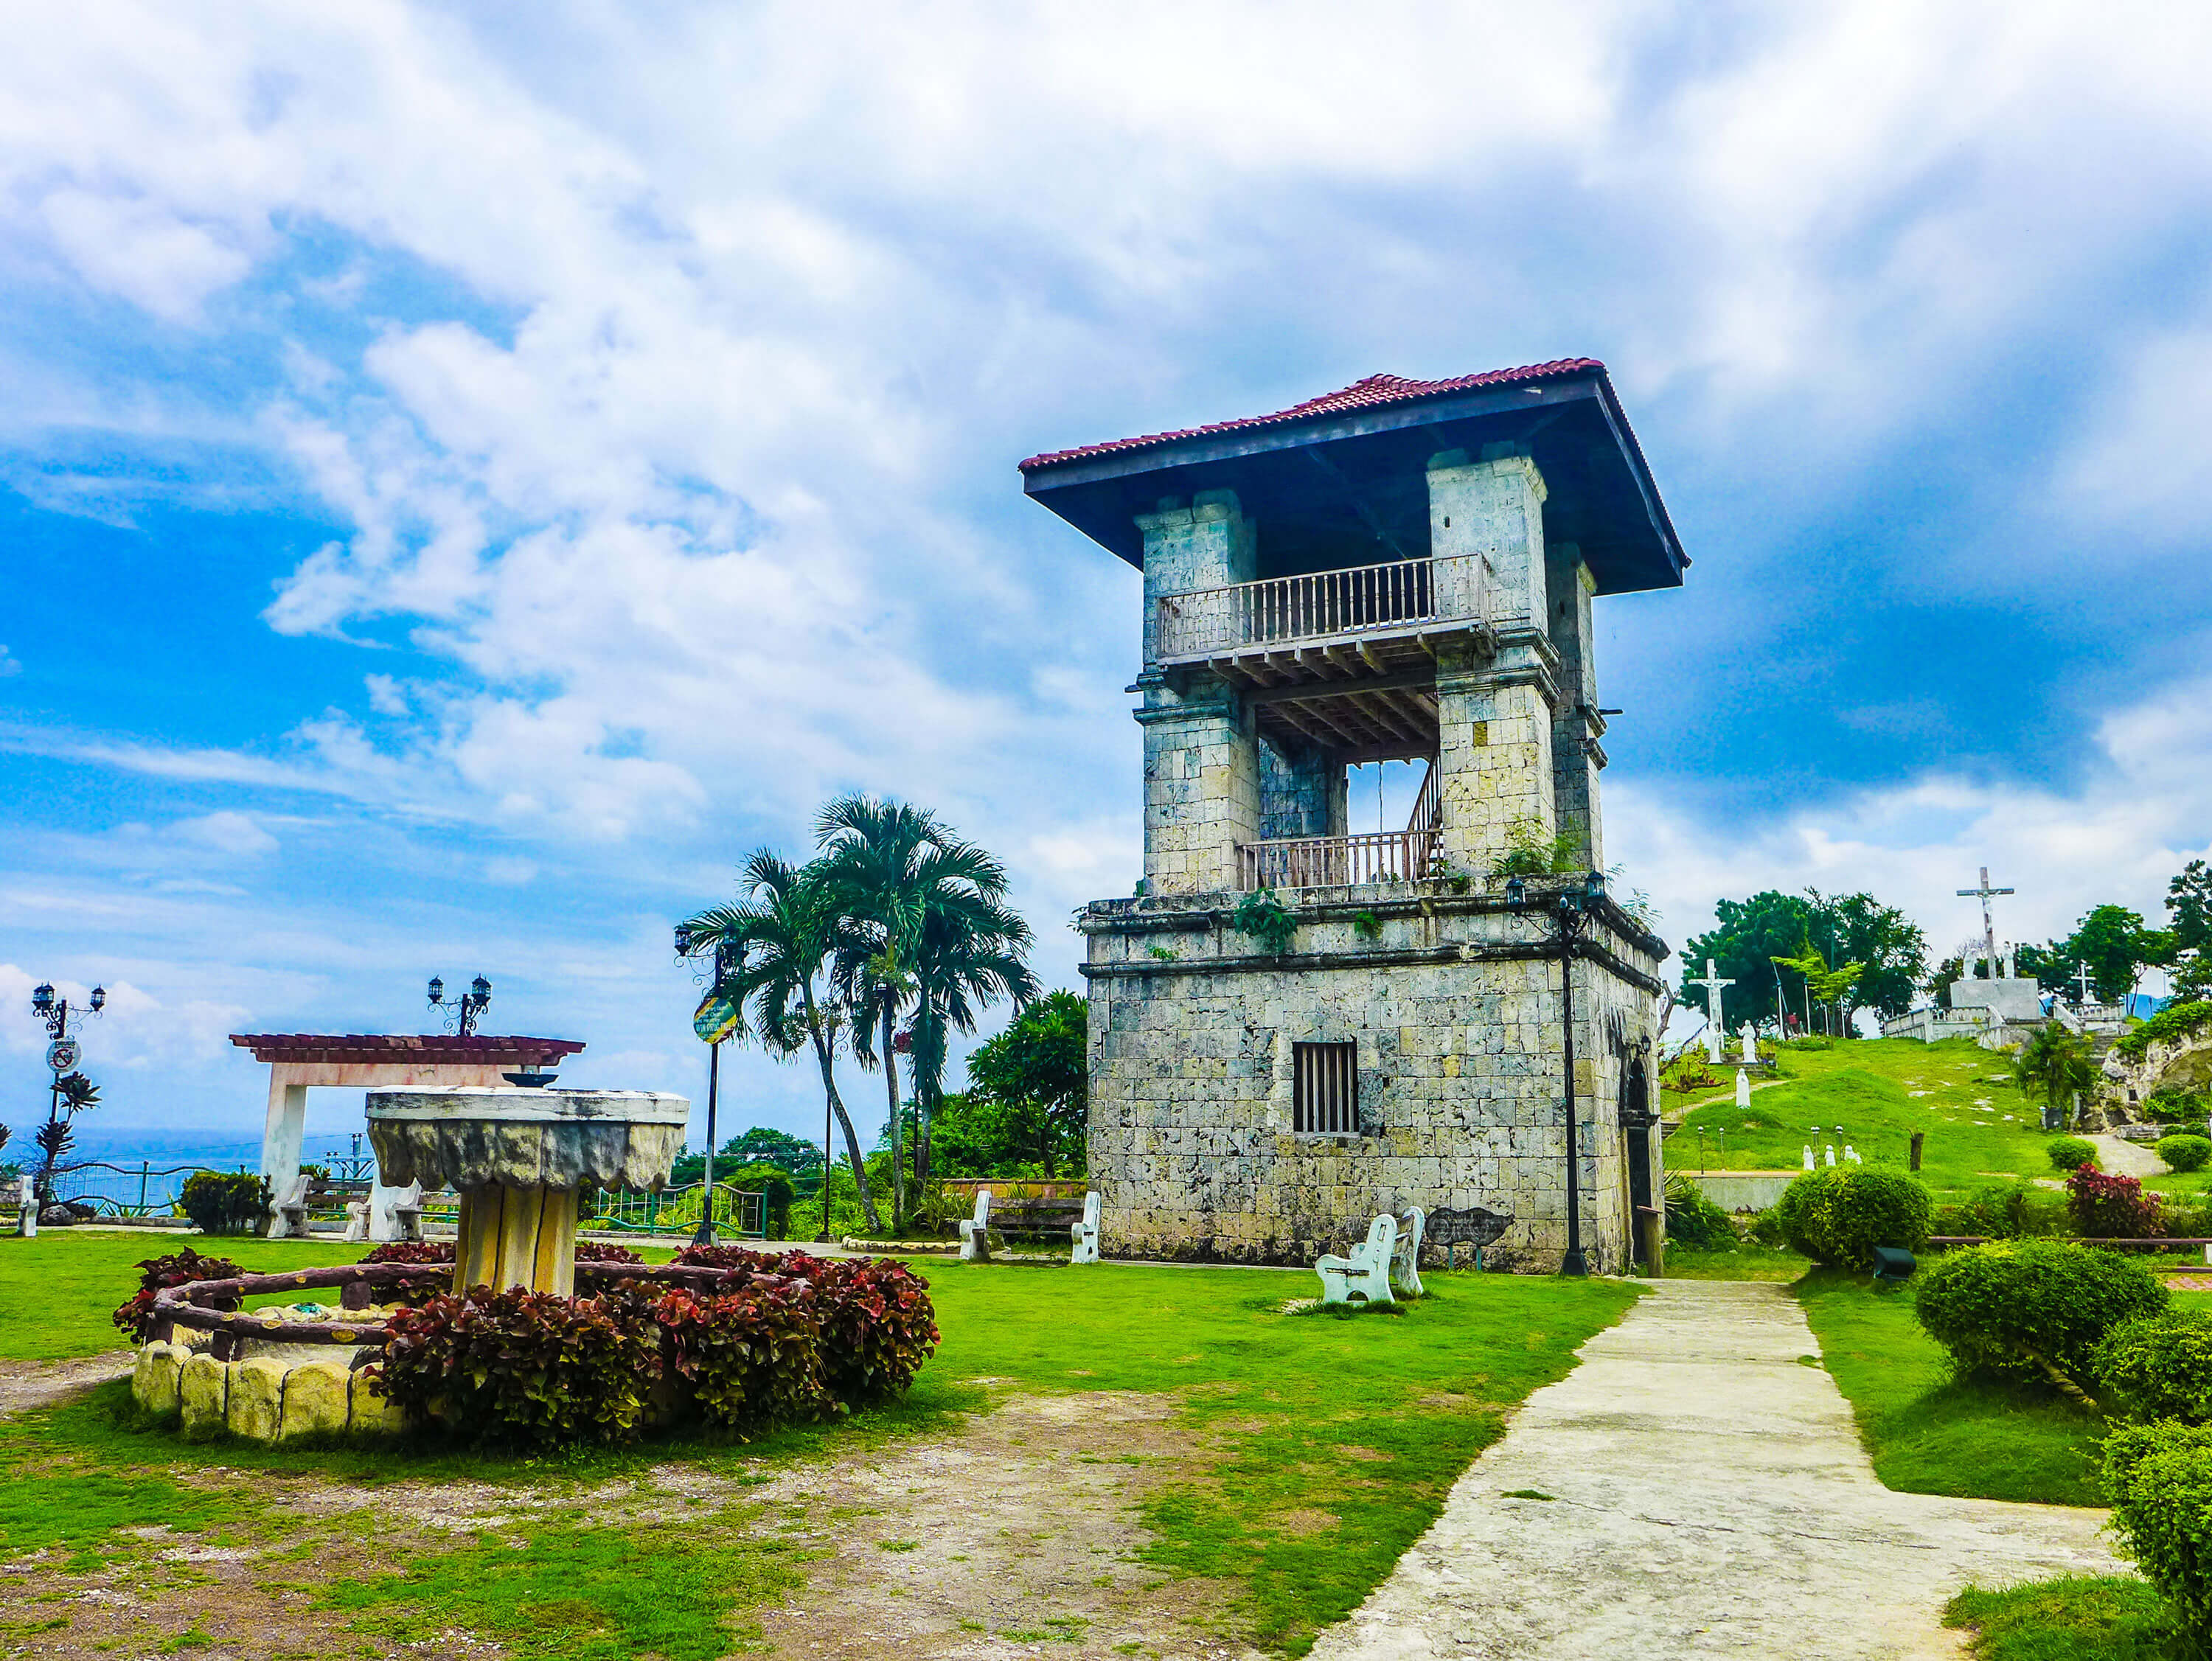 SAMBOAN. The watchtower in Samboan, near the San Miguel Arcangel parish church in the town center.